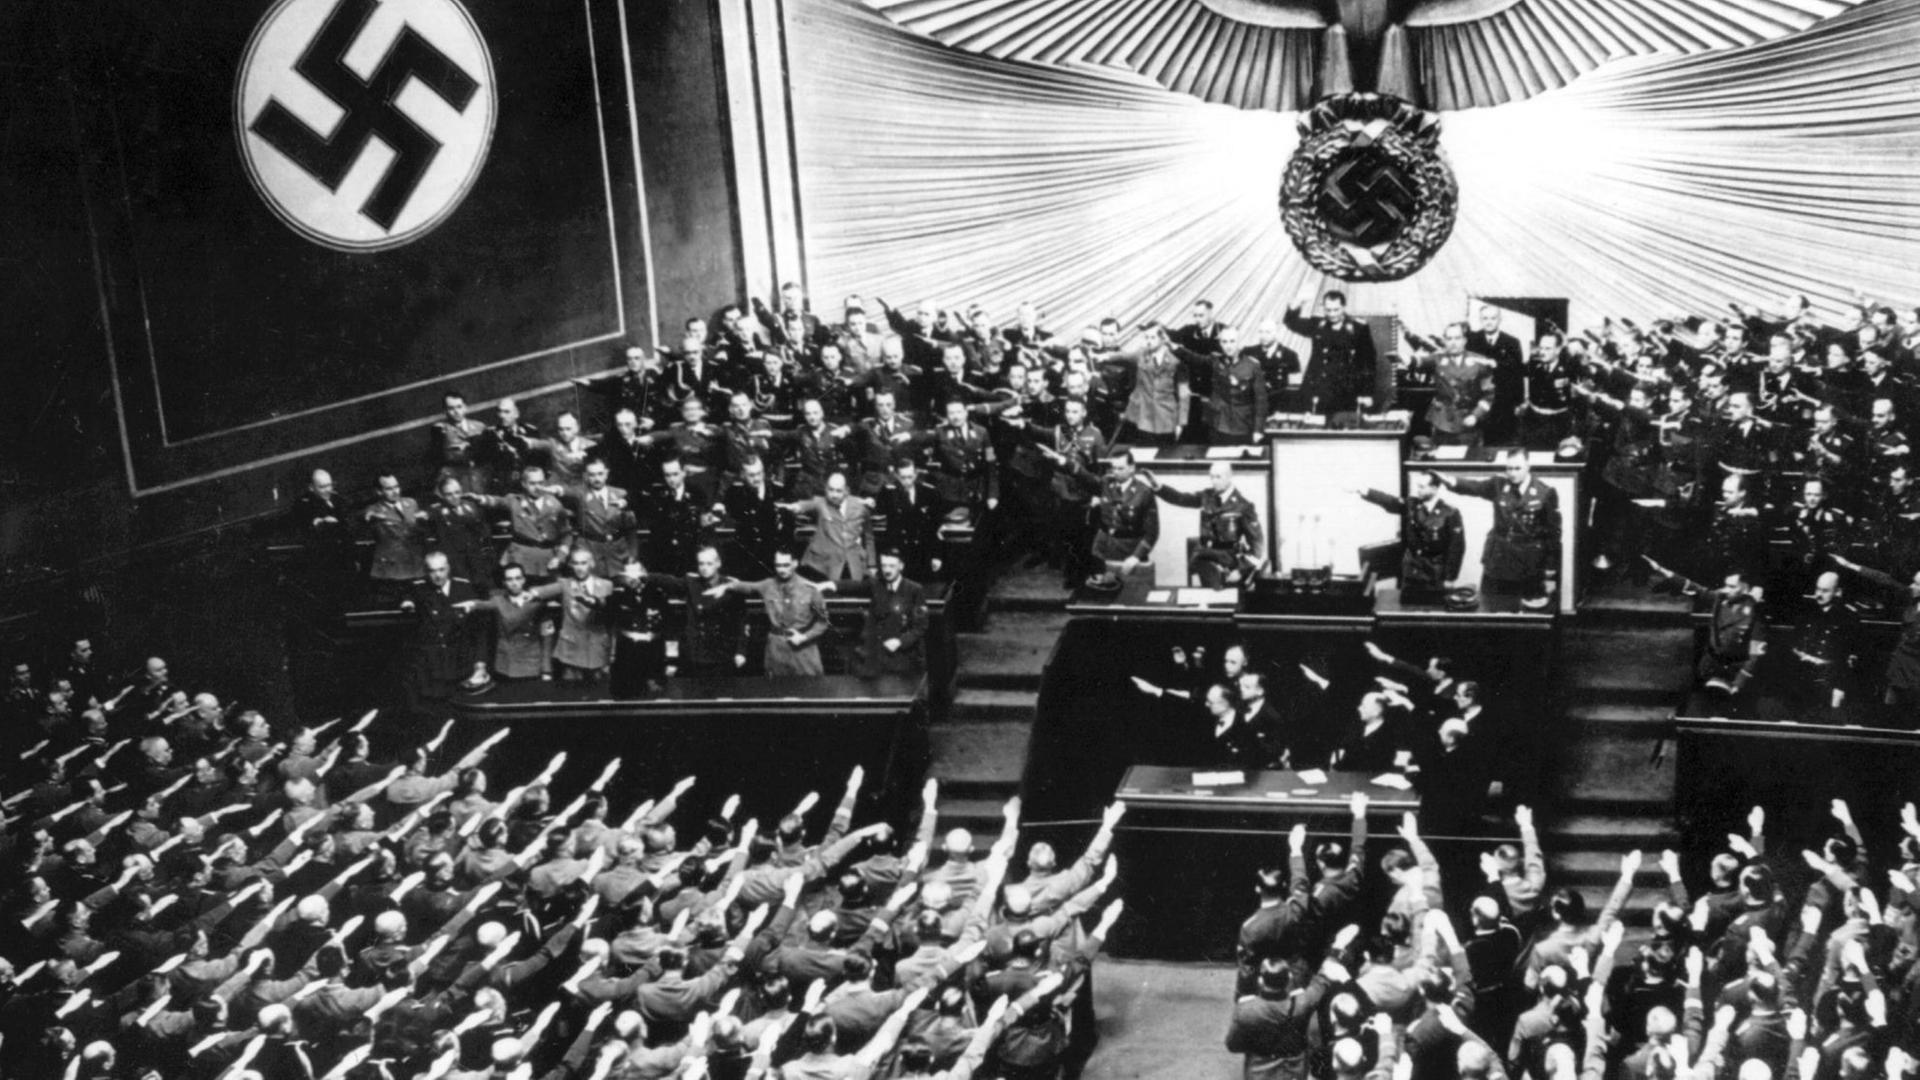 Blick in die Berliner Krolloper während der Reichstagssitzung am 6. Oktober 1939. Adolf Hitler zog in seiner Rede eine Bilanz des Polenfeldzugs und machte ein "Friedensangebot", das unter anderem die Annerkennung der deutschen Eroberungen vorausssetzte und somit wenige Tage später von Frankreich und Großbritannien abgelehnt wurde.